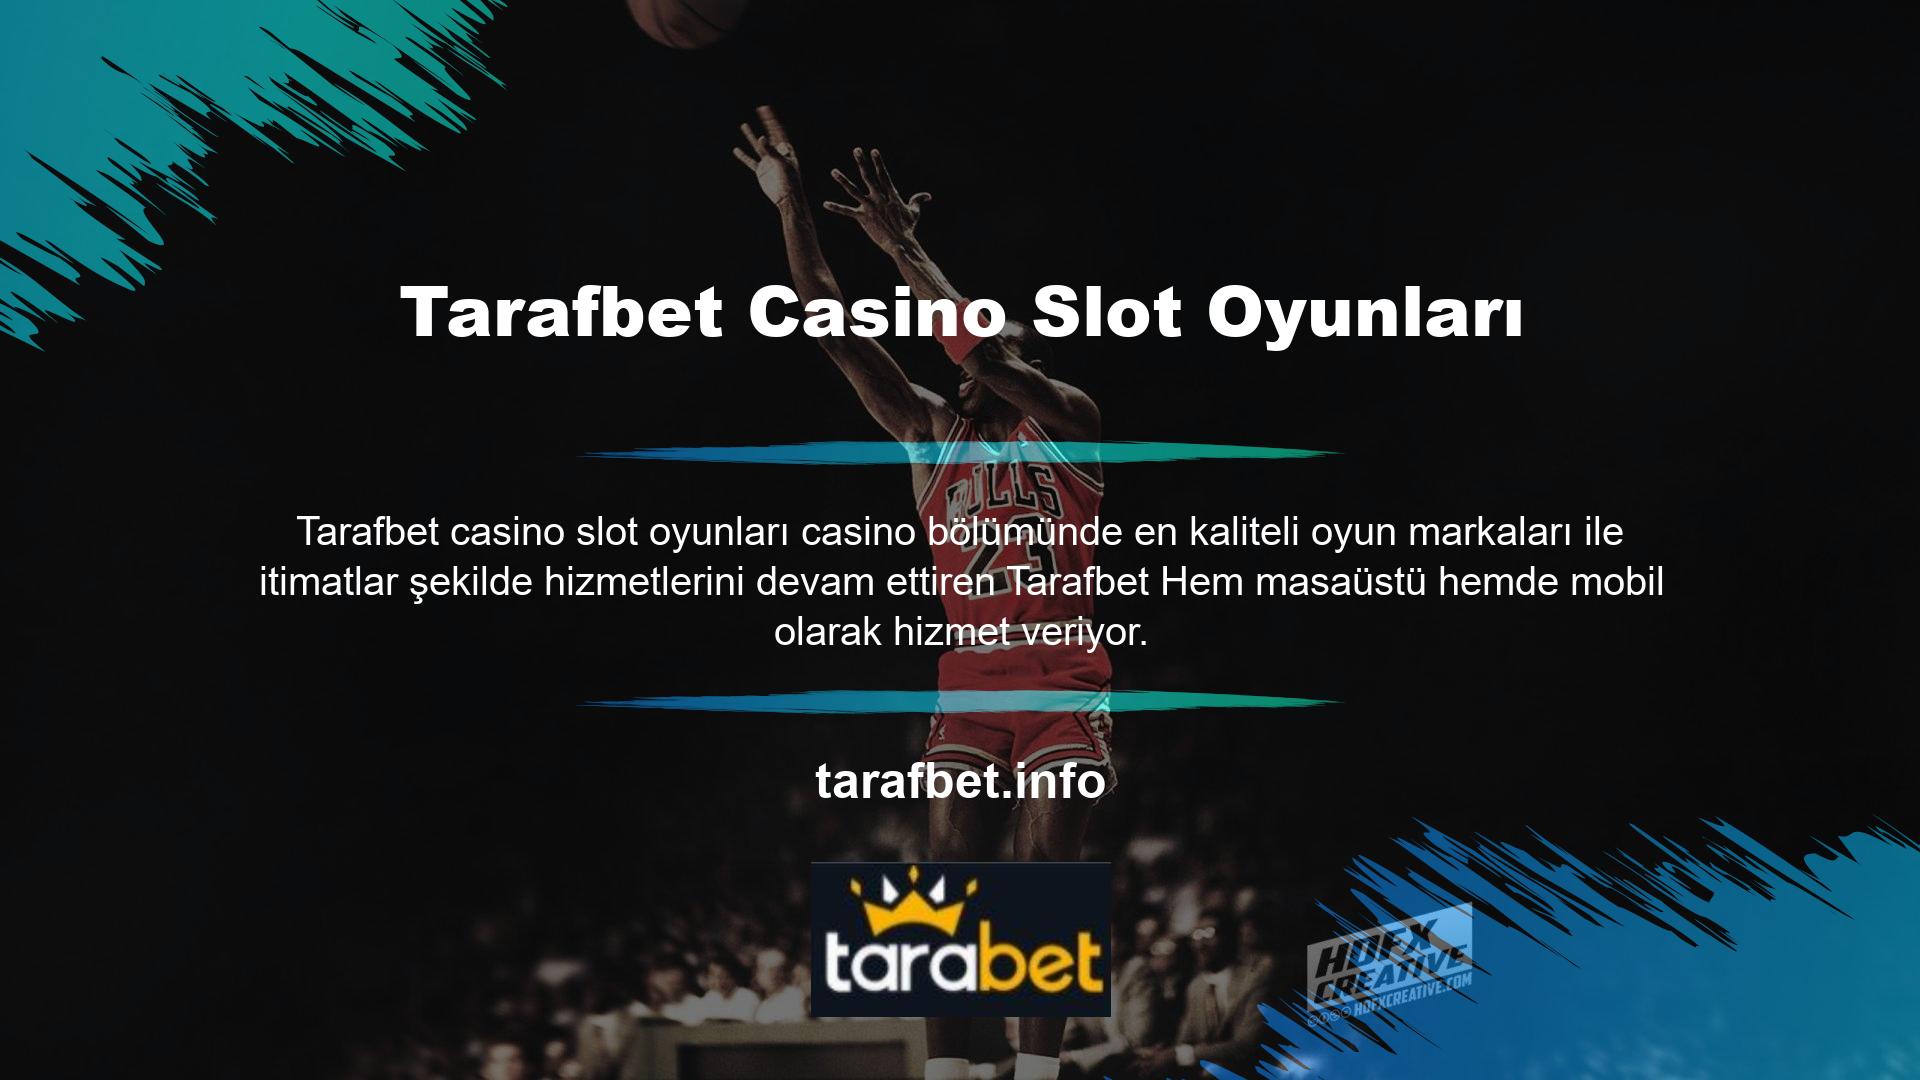 Tarafbet Casino Slot Oyunları en kazançlı slot oyunlarını bünyesine katarak casino tutkunlarının olmazsa olmazı bir platform olmayı başarmıştır